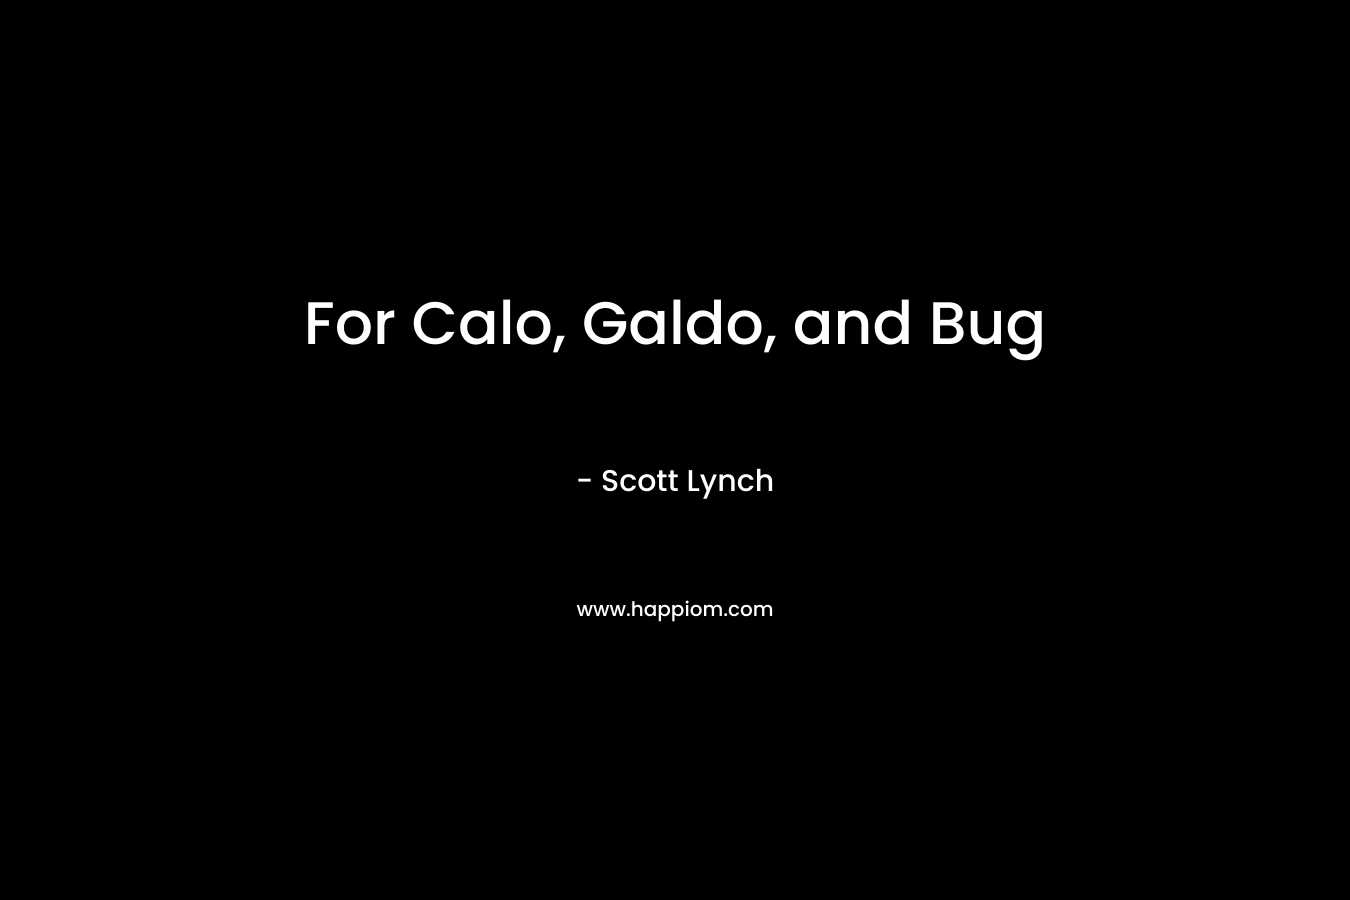 For Calo, Galdo, and Bug